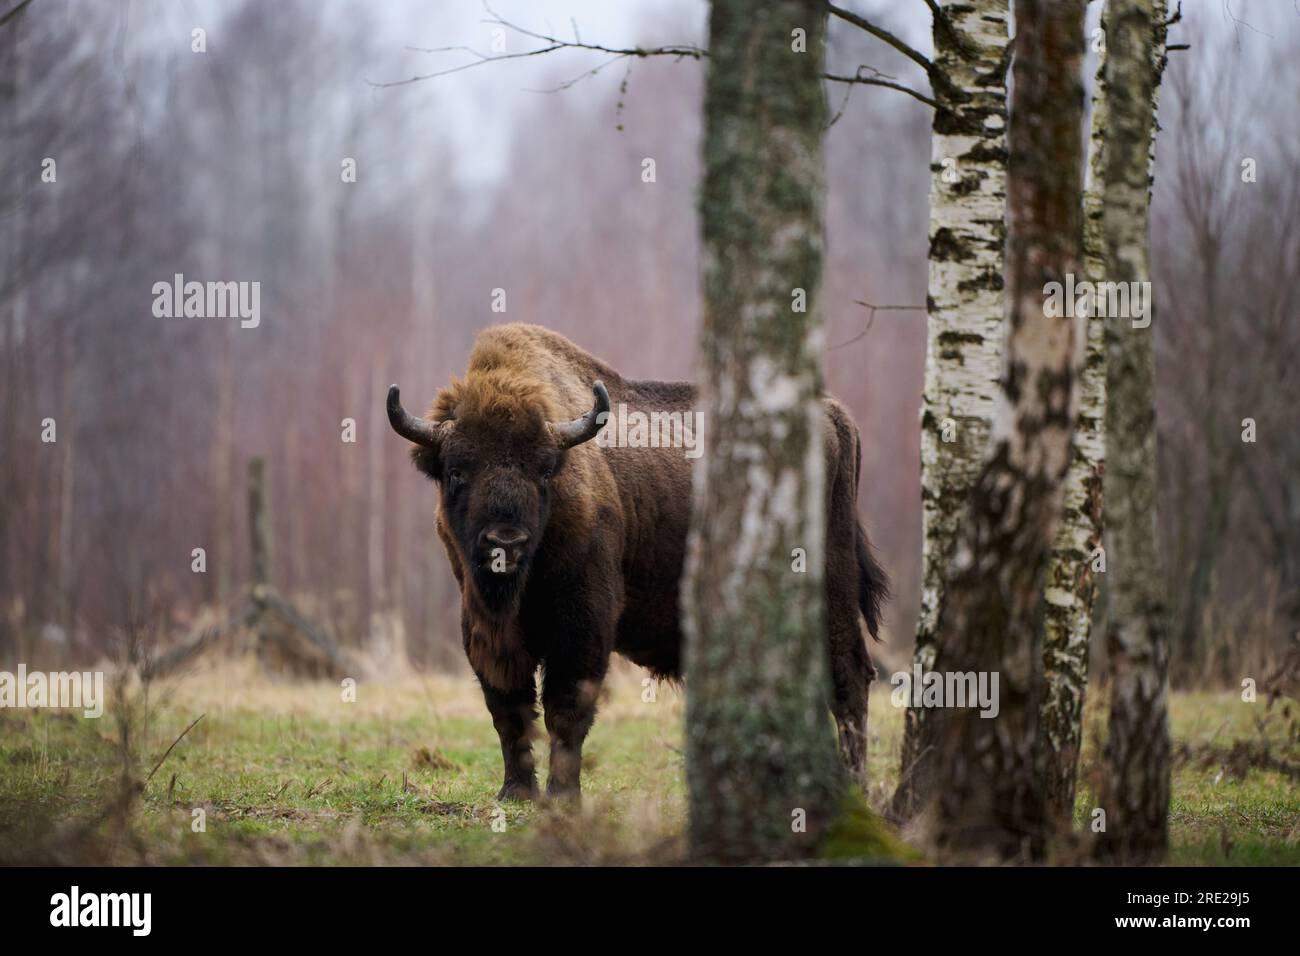 European Bison – ein majestätisches Wildtierporträt in seinem natürlichen Lebensraum. Perfekt für Projekte mit Naturthemen. Stockfoto